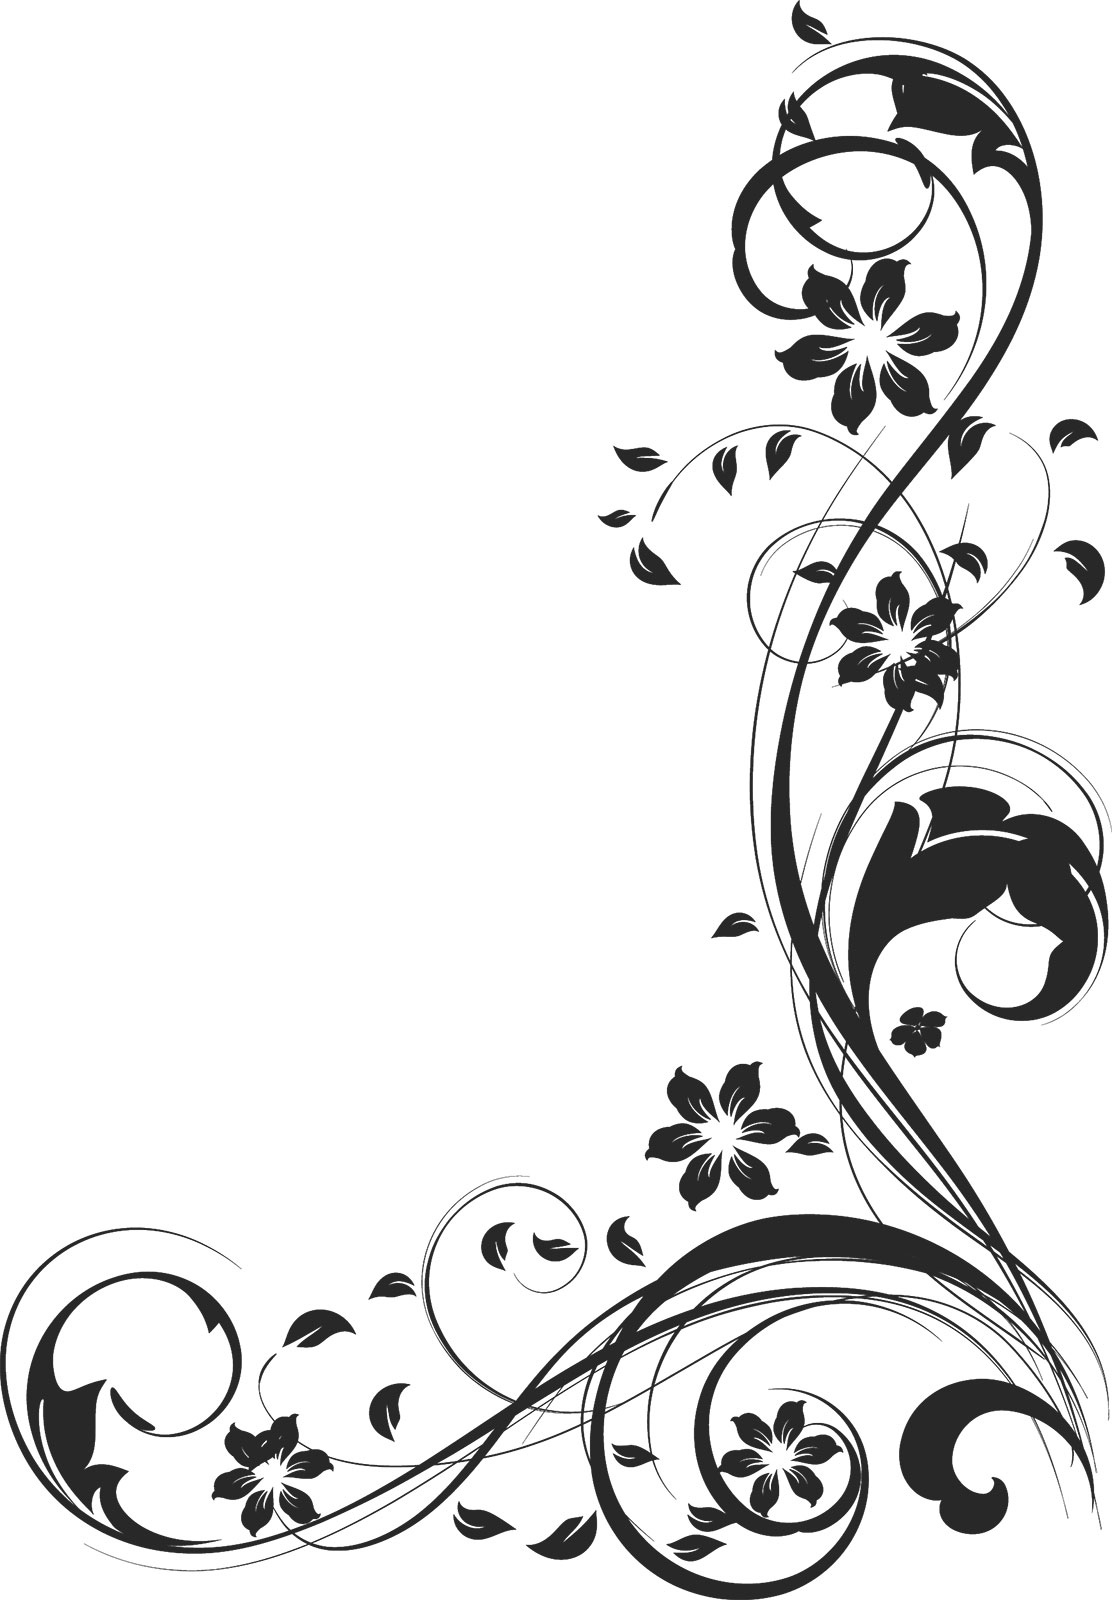 花のイラスト フリー素材 コーナーライン 角 No 141 白黒 茎葉 曲線